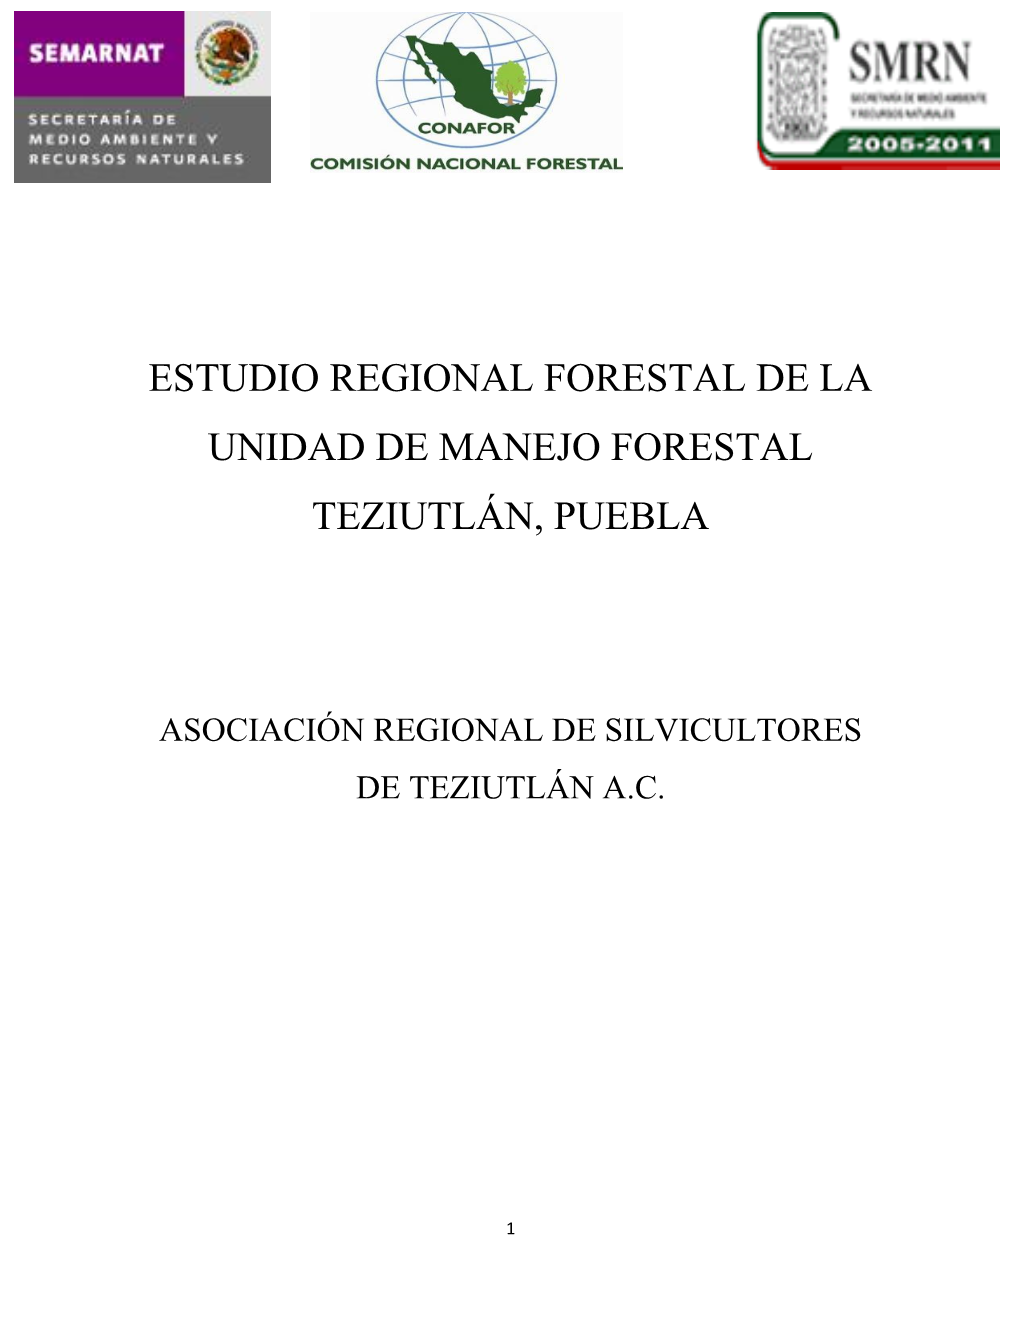 Estudio Regional Forestal De La Unidad De Manejo Forestal Teziutlán, Puebla